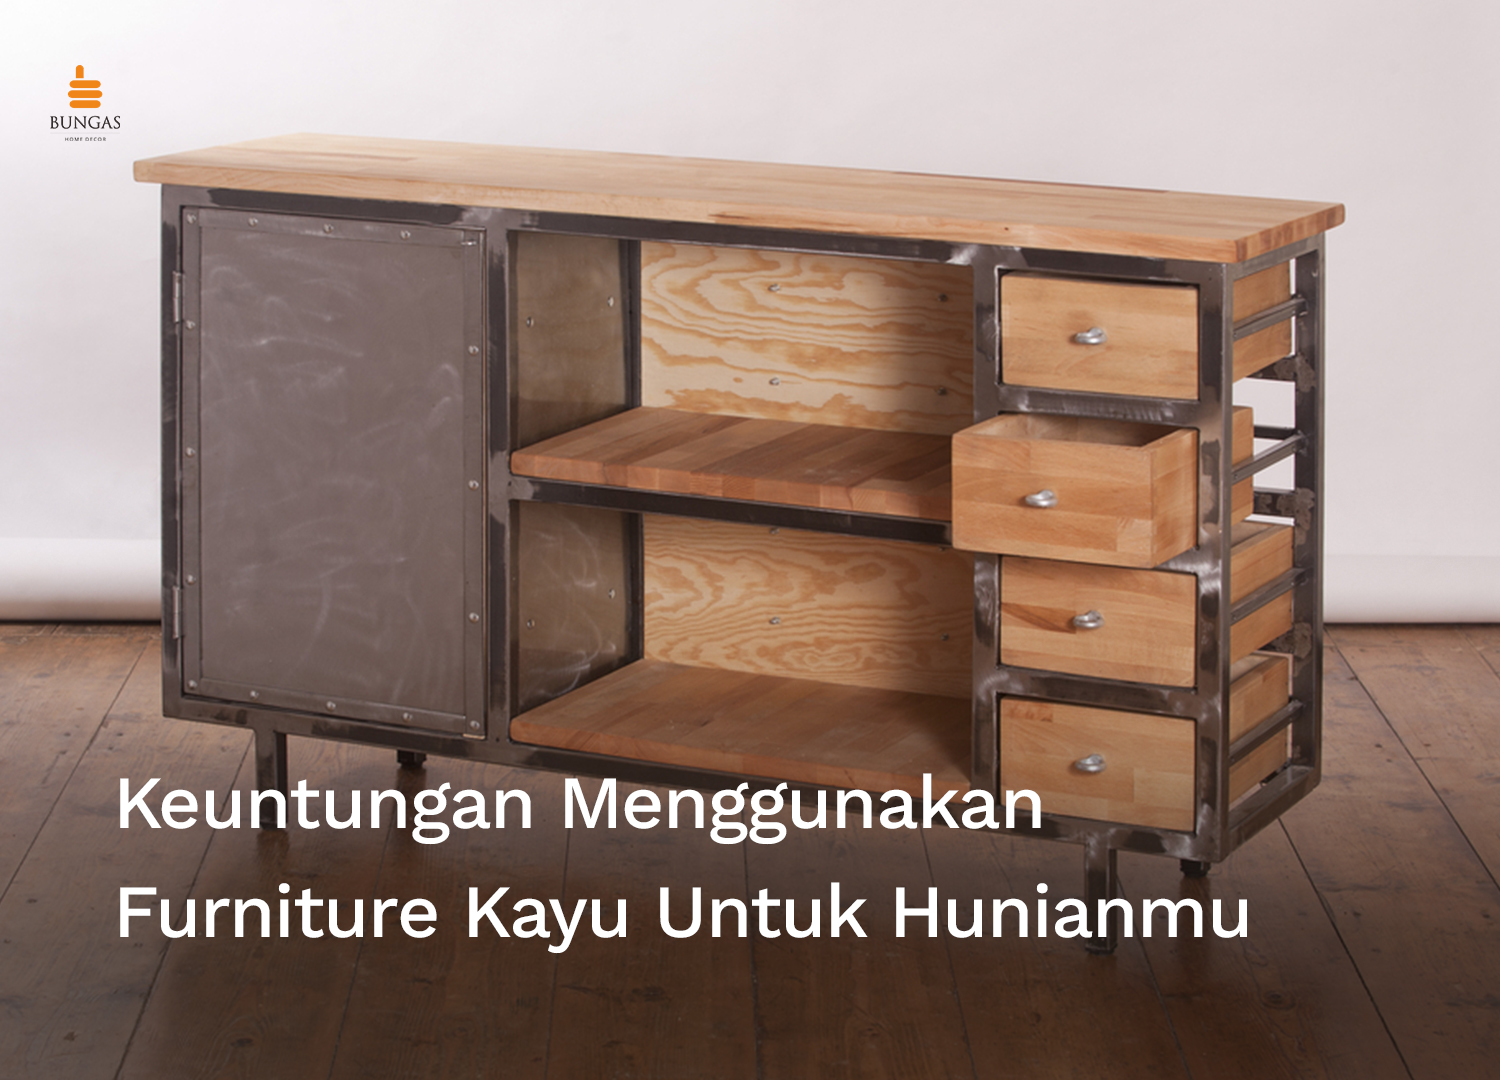 You are currently viewing Keuntungan Menggunakan Furniture Berbahan Kayu untuk Hunianmu